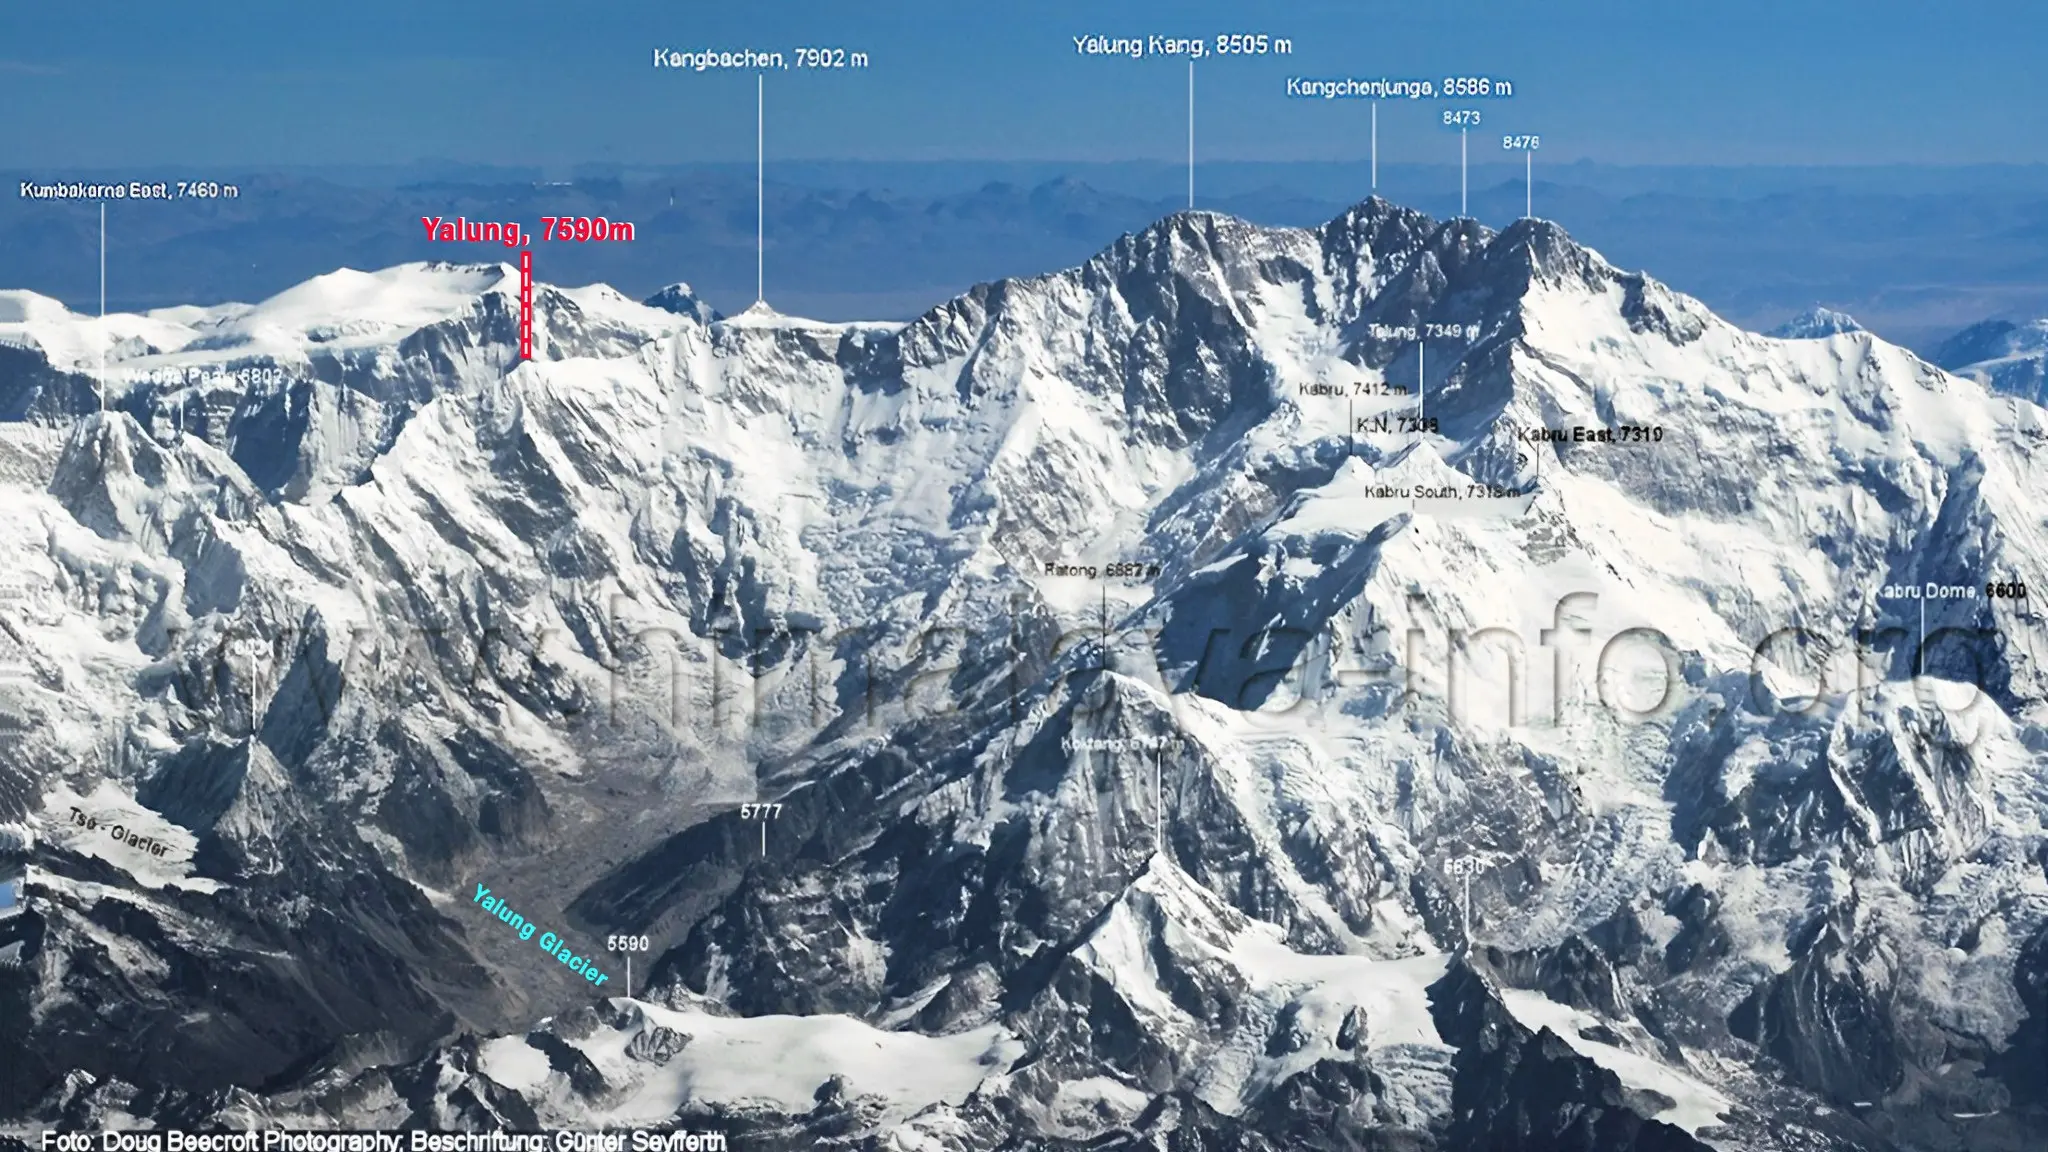 Уся територія масиву восьмитисяника Кангченджанга. Гора Кангбачен на захід від Кангченджанги, з масивом Кабру (де Гамор, Мерої та Бенет відкрили маршрут минулого року) попереду. Гора Янну Східна ліворуч. Фото Himalaya-info . org